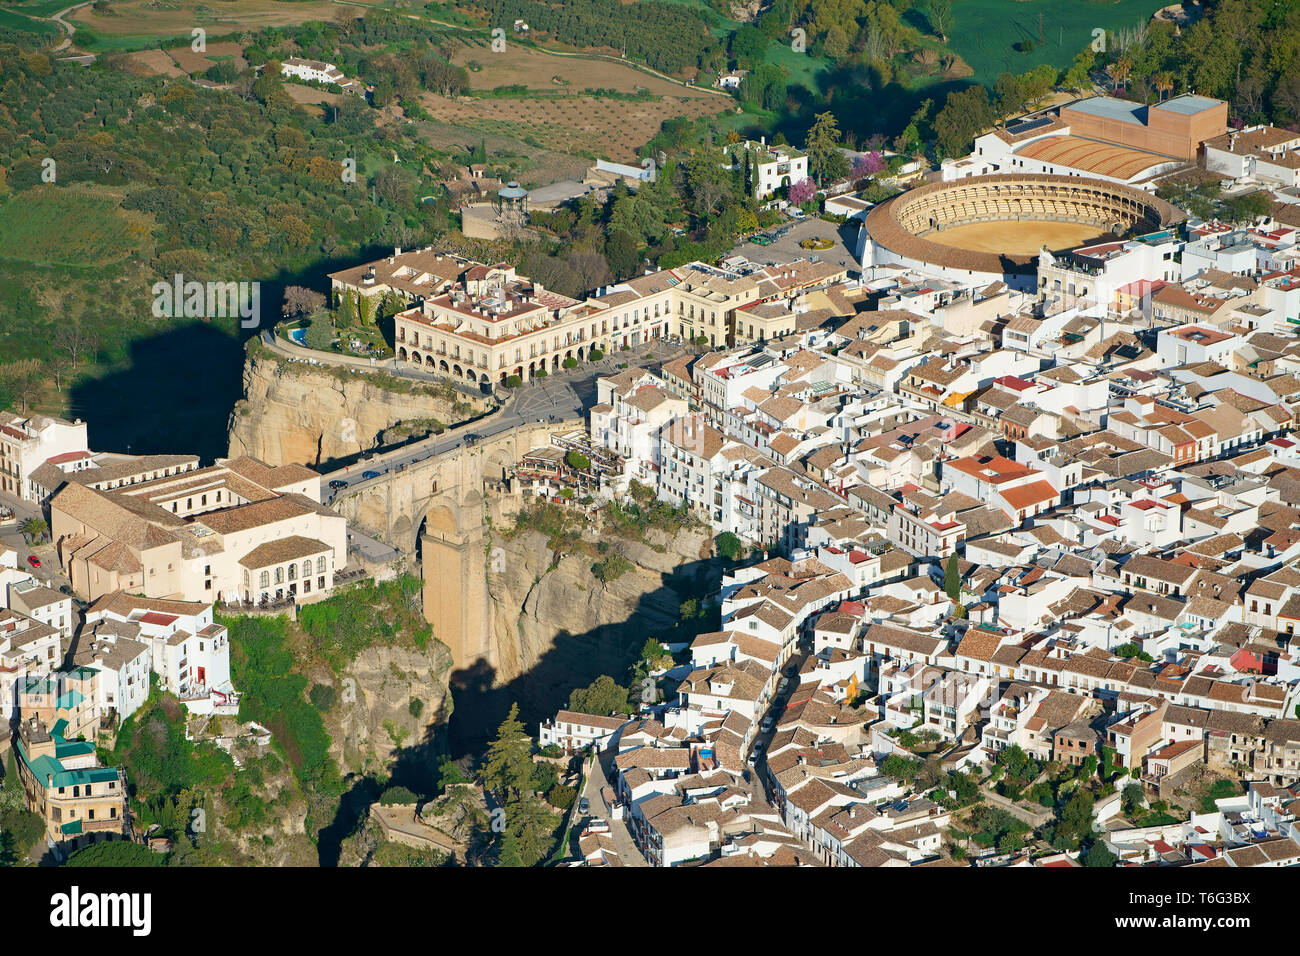 LUFTAUFNAHME. Historische, malerische Stadt, die durch einen tiefen Canyon halbiert wird. Ronda, Andalusien, Spanien. Stockfoto